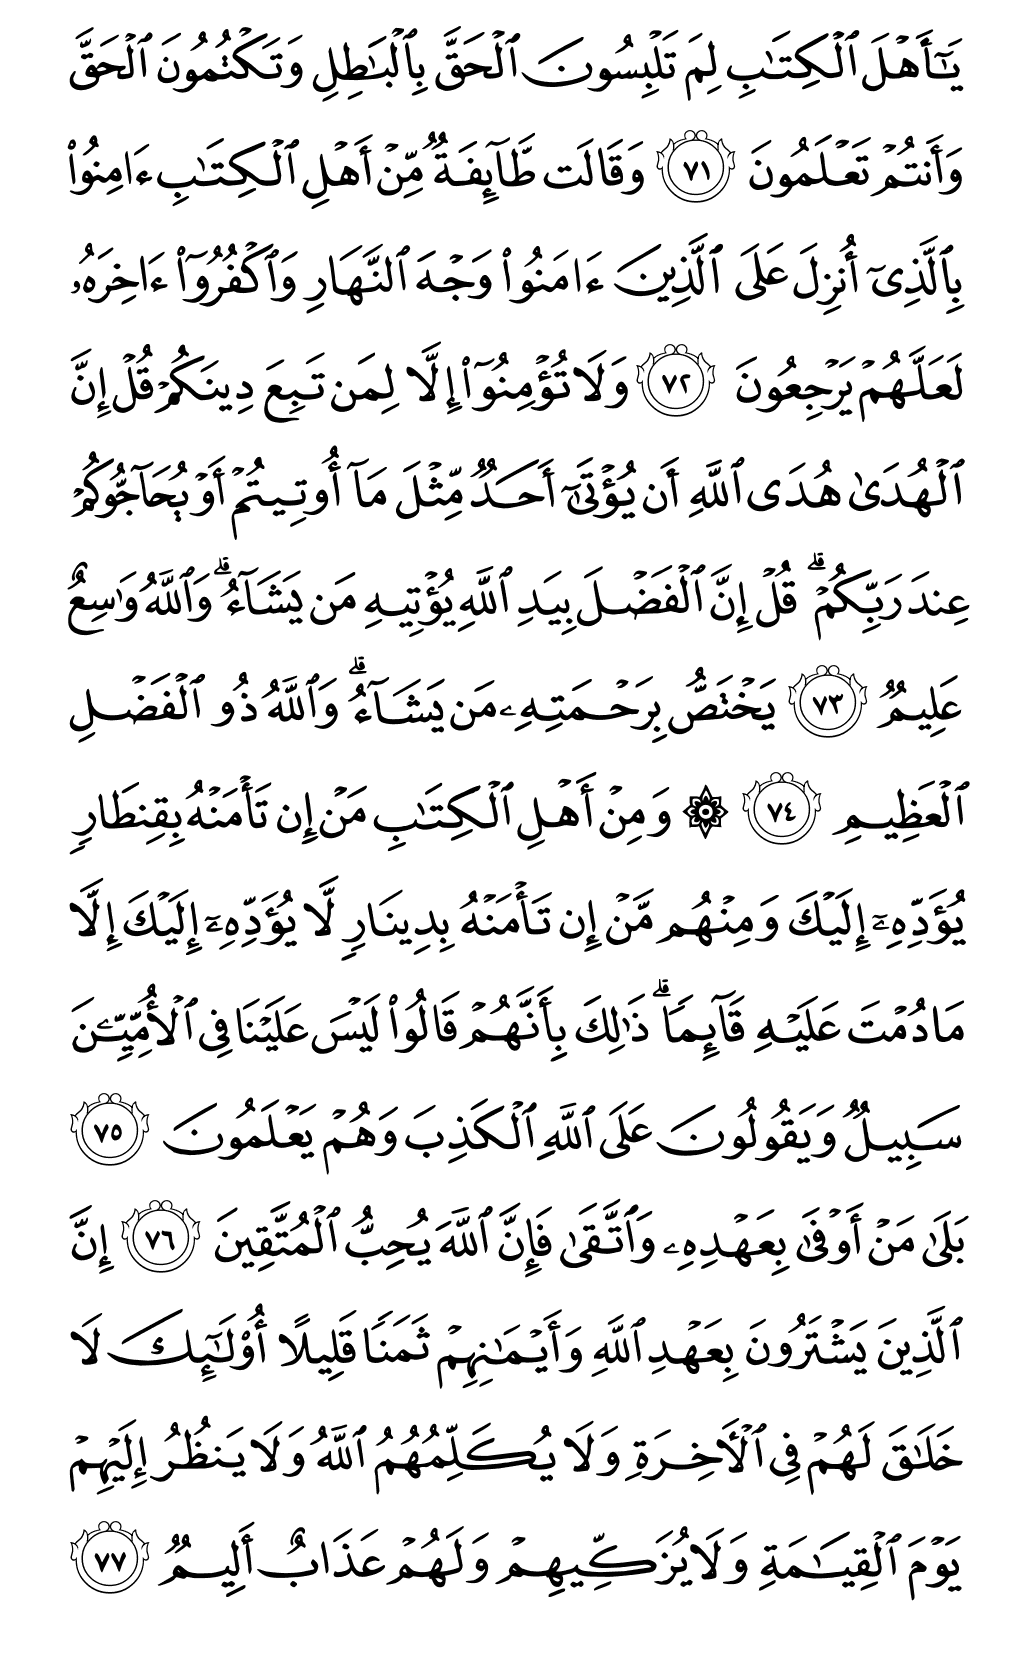 الصفحة رقم 59 من القرآن الكريم